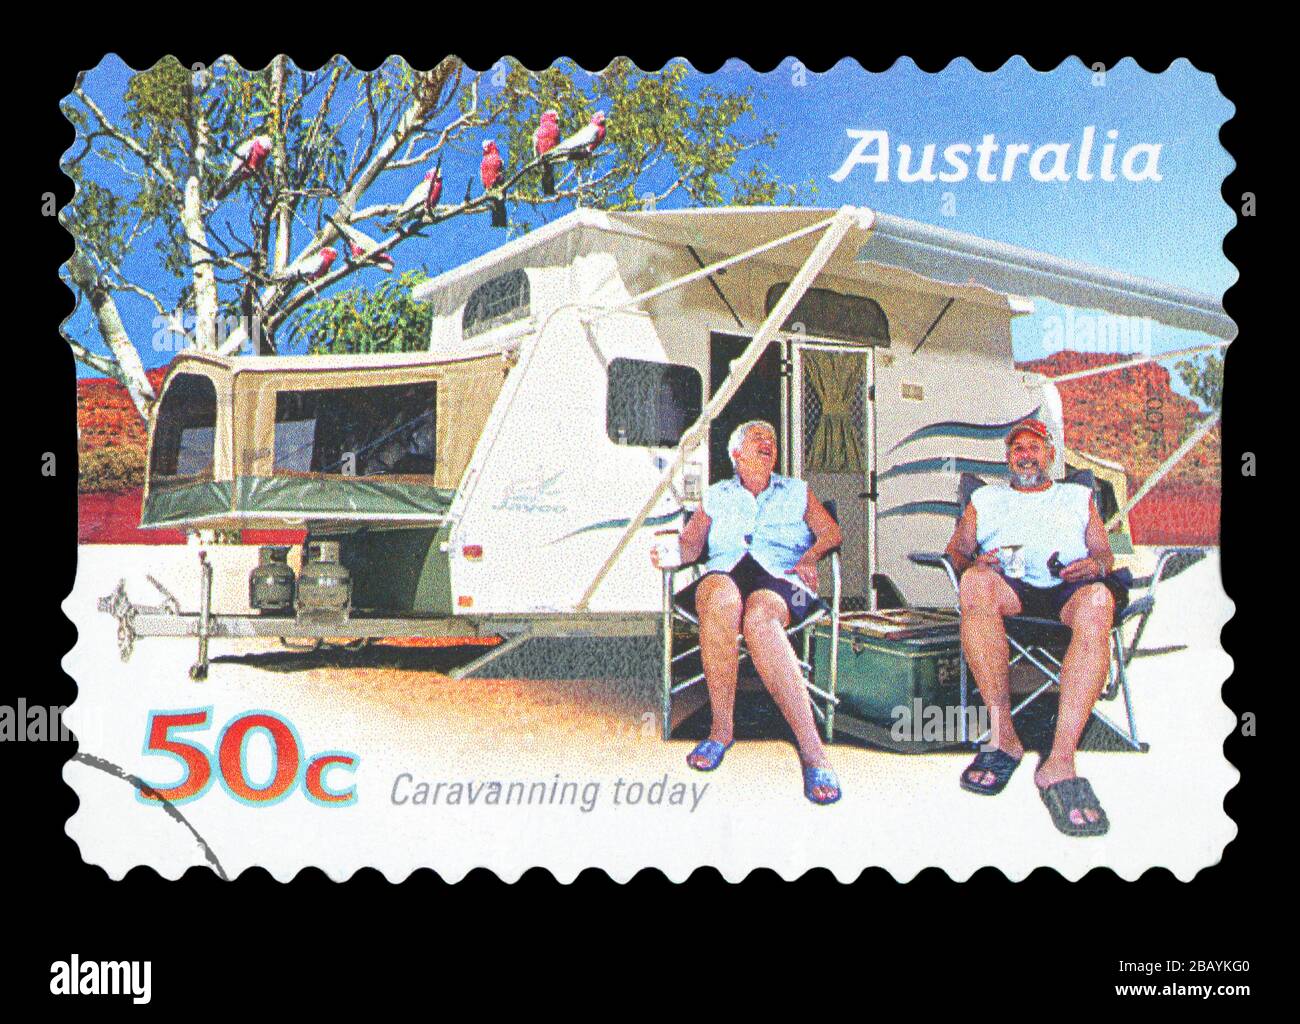 Australien - CIRCA 2007: Eine in Australien gedruckte Briefmarke zeigt, dass die Familie heute, etwa 2007, eine Karawane genießt, Karavanning Stockfoto